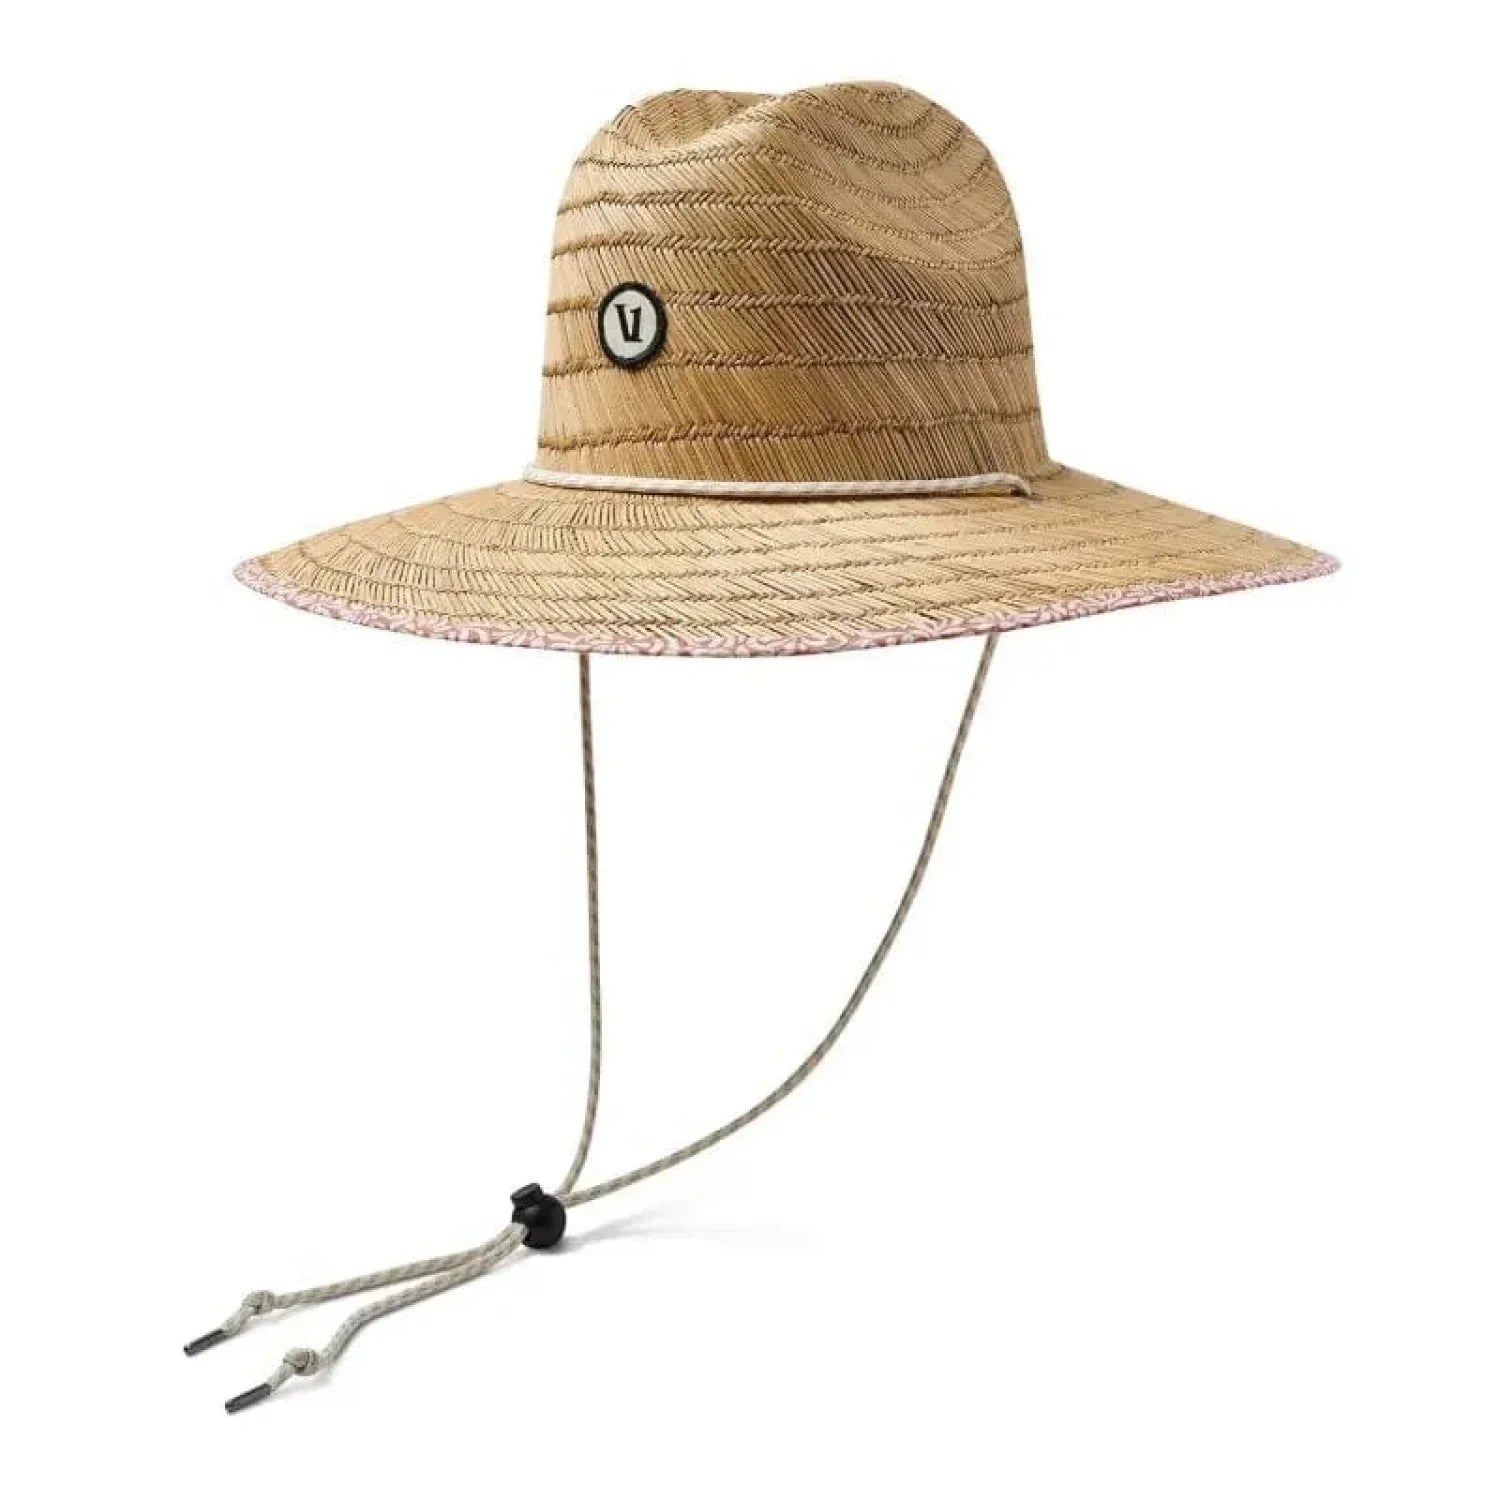 Vuori HATS - HATS BILLED - HATS BILLED Beacons Lifeguard Hat PAS PALO SANTO SAMBA One Size